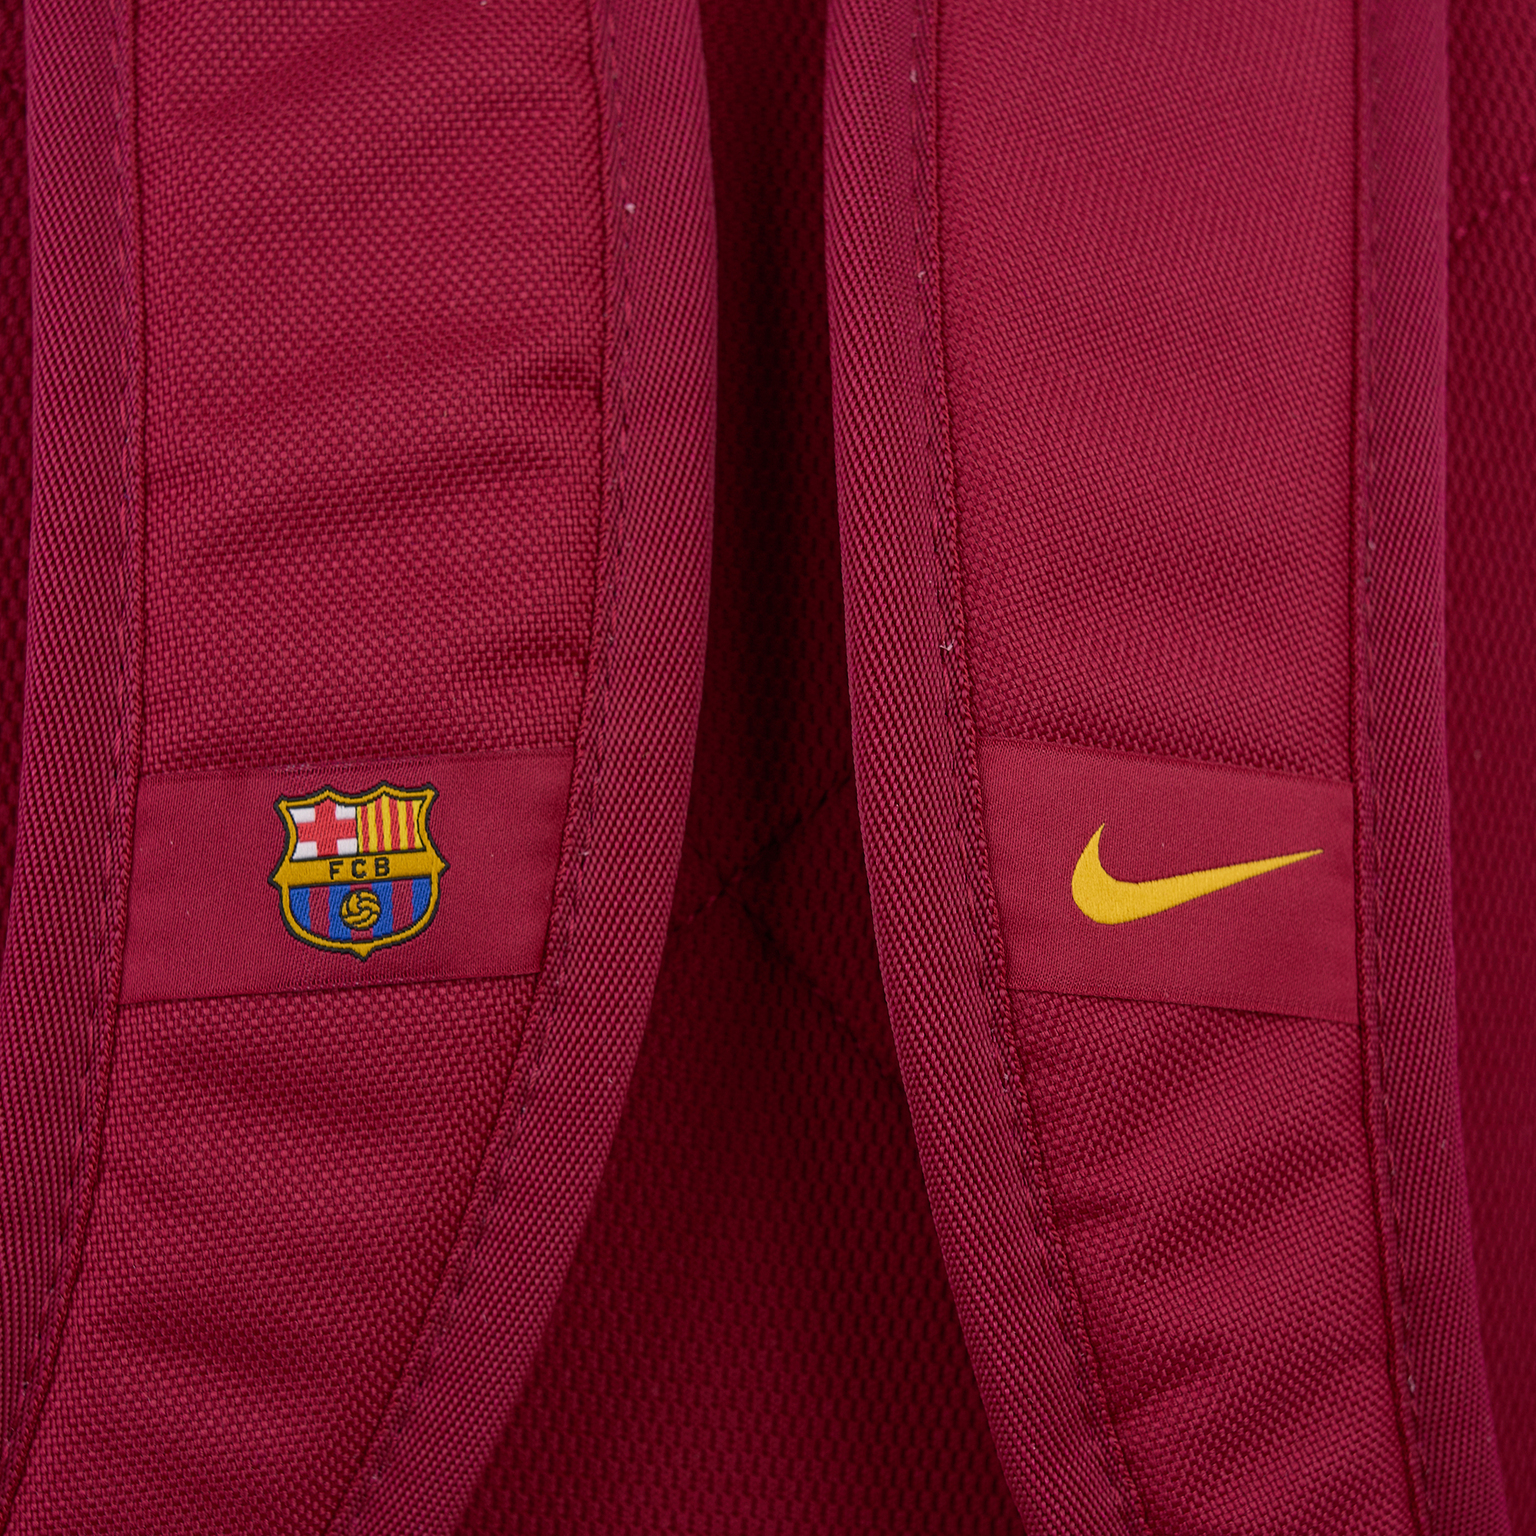 Рюкзак Nike Barcelona CK6683-620